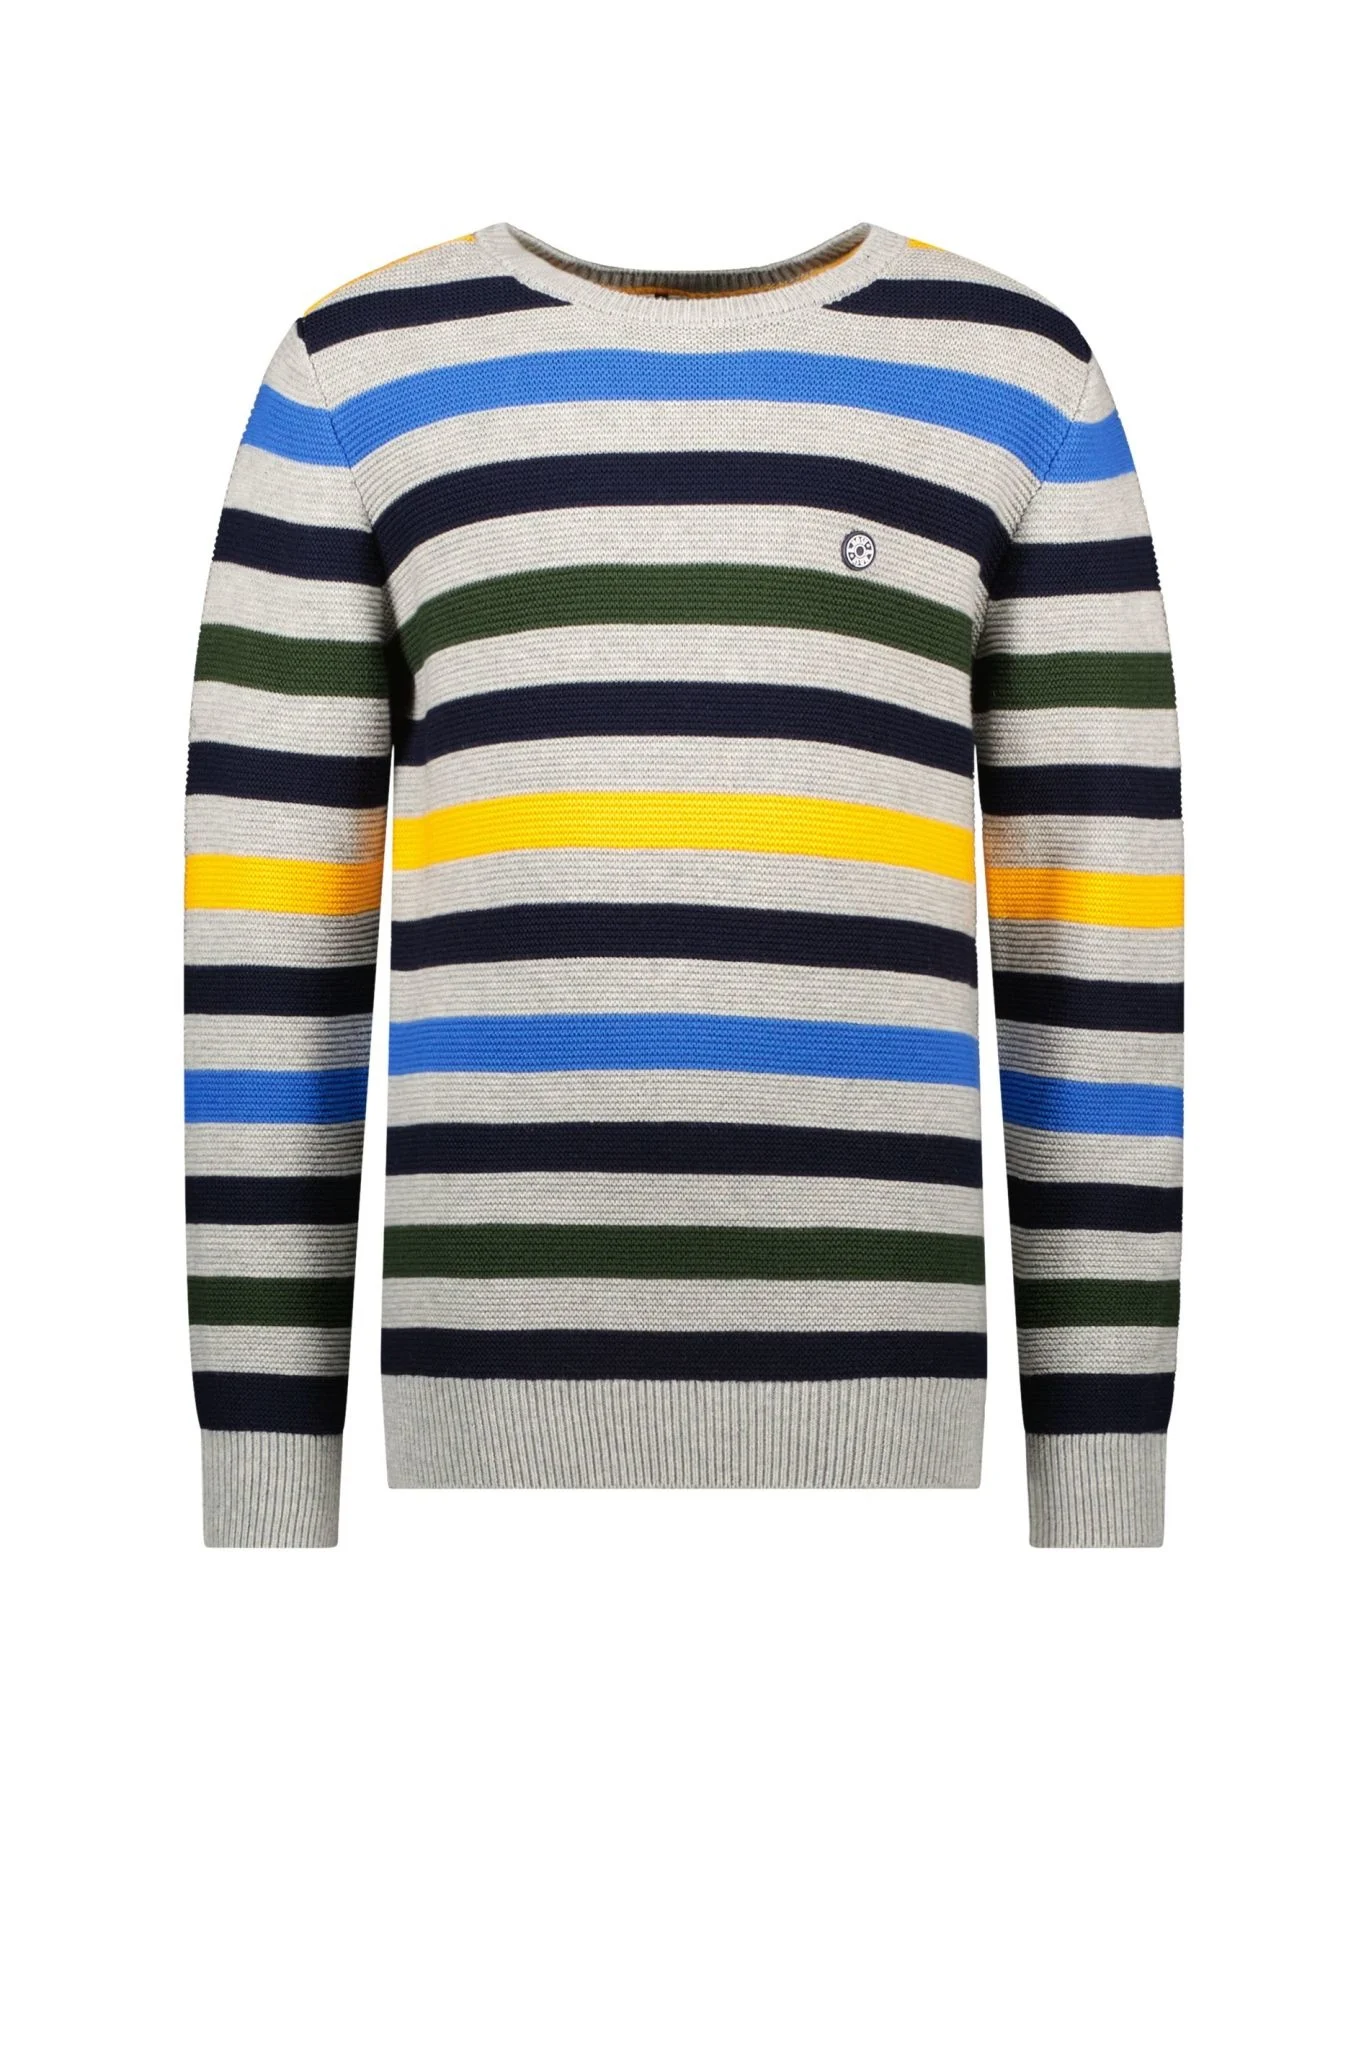 Afbeelding van B.Nosy Jongens gebreide sweater multi color stripe melee